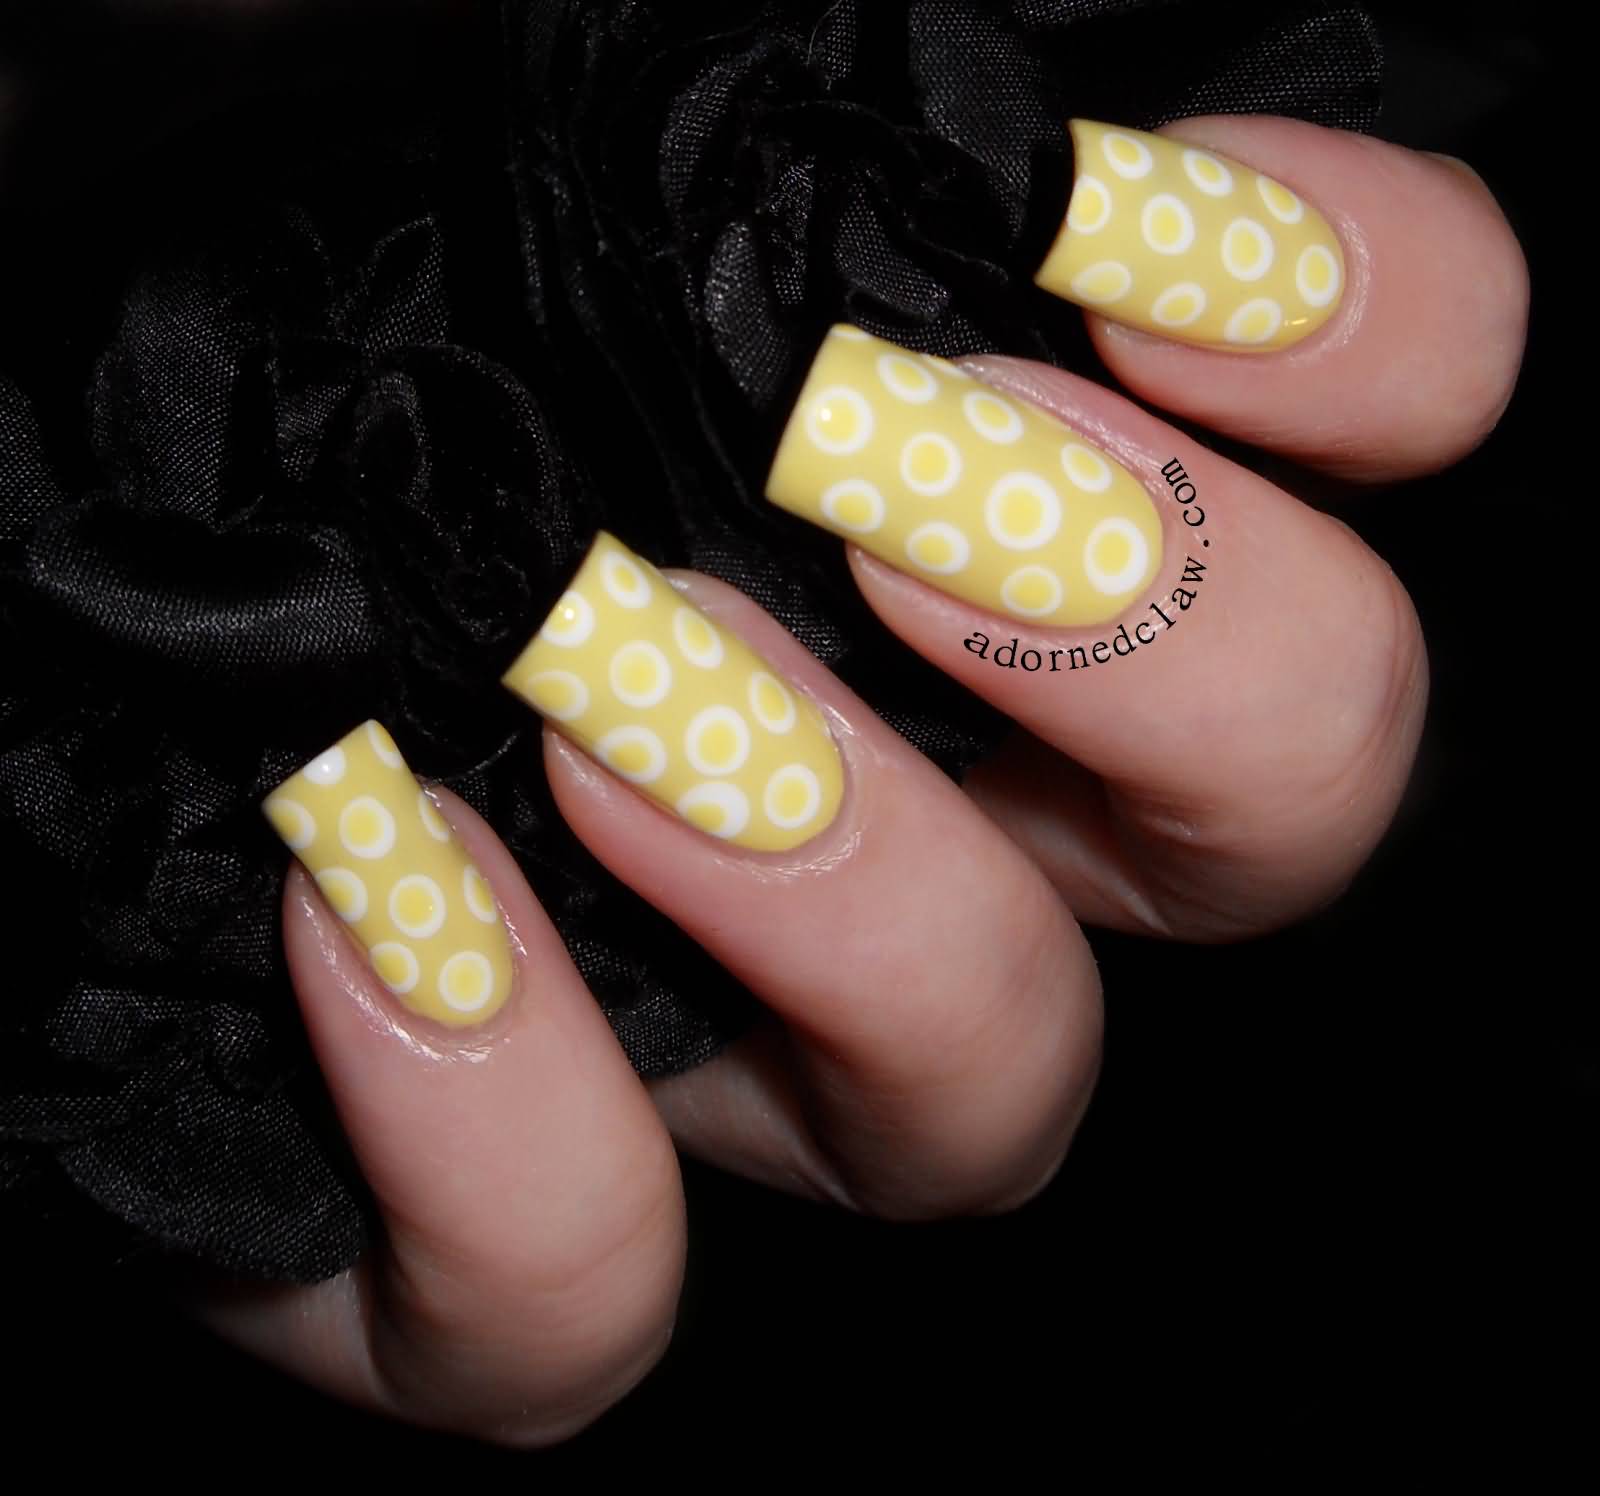 Yellow And White Polka Dots Nail Art